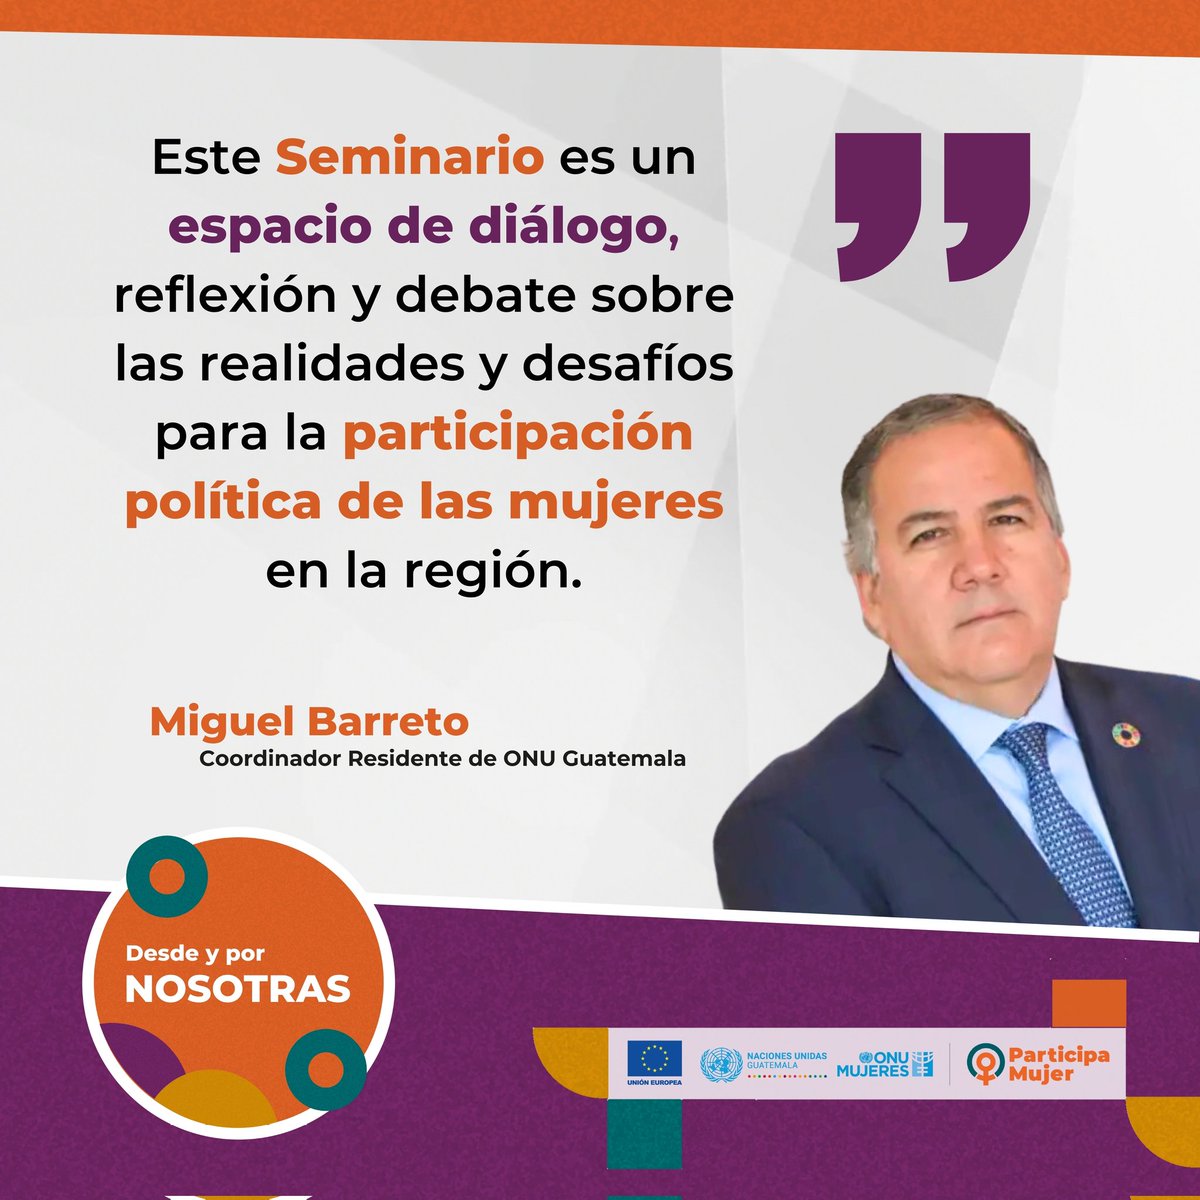 Palabras del Sr. Miguel Barreto, coordinador residente de @ONUGuatemala en el Seminario Internacional #DesdeYporNosotras del Proyecto #ParticipaMujer financiado por @UEGuatemala